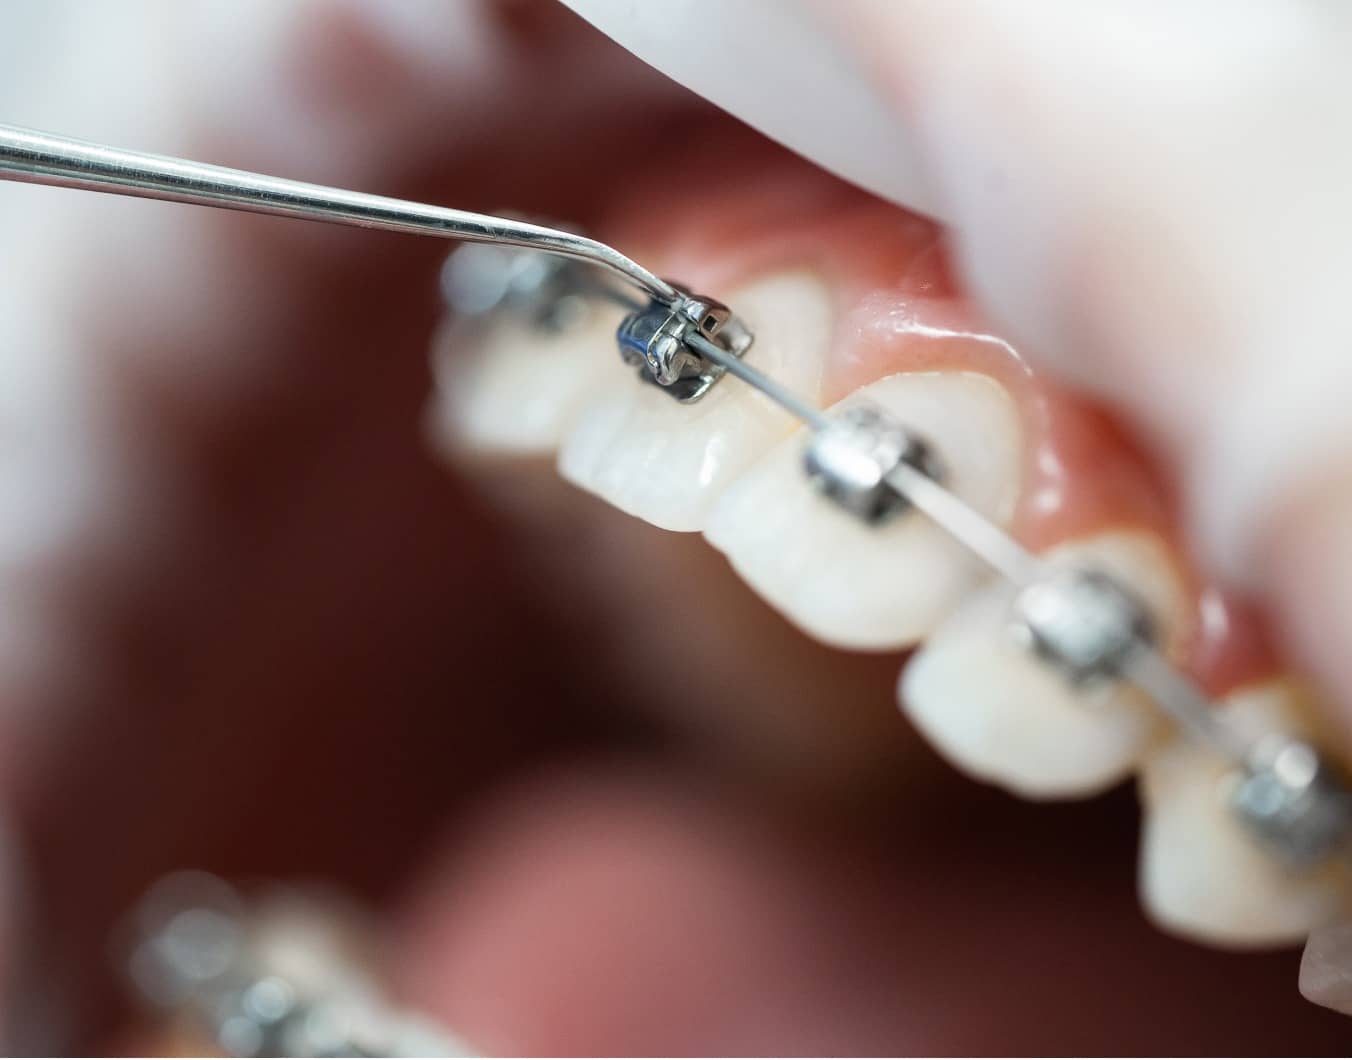 Les bénéfices d’un traitement orthodontique sur la santé bucco-dentaire | Dr Temstet | Paris